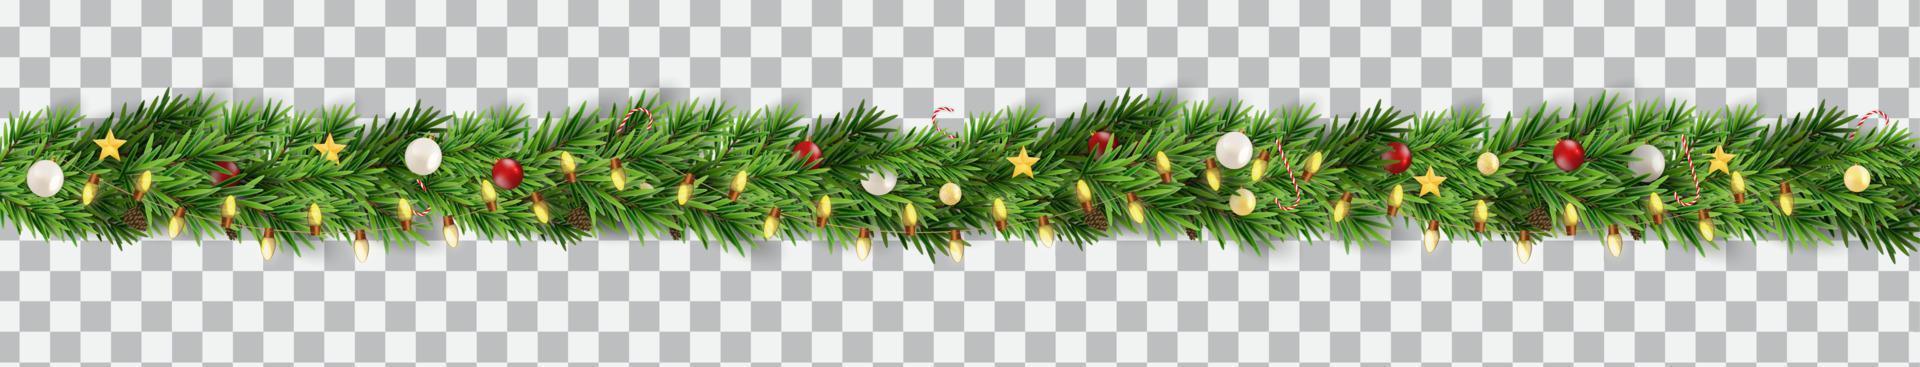 breite Weihnachtsgrenzengirlande aus Tannenzweigen, Kugeln, Tannenzapfen und anderen Ornamenten, einzeln auf transparentem Hintergrund. Vektor-Illustration vektor